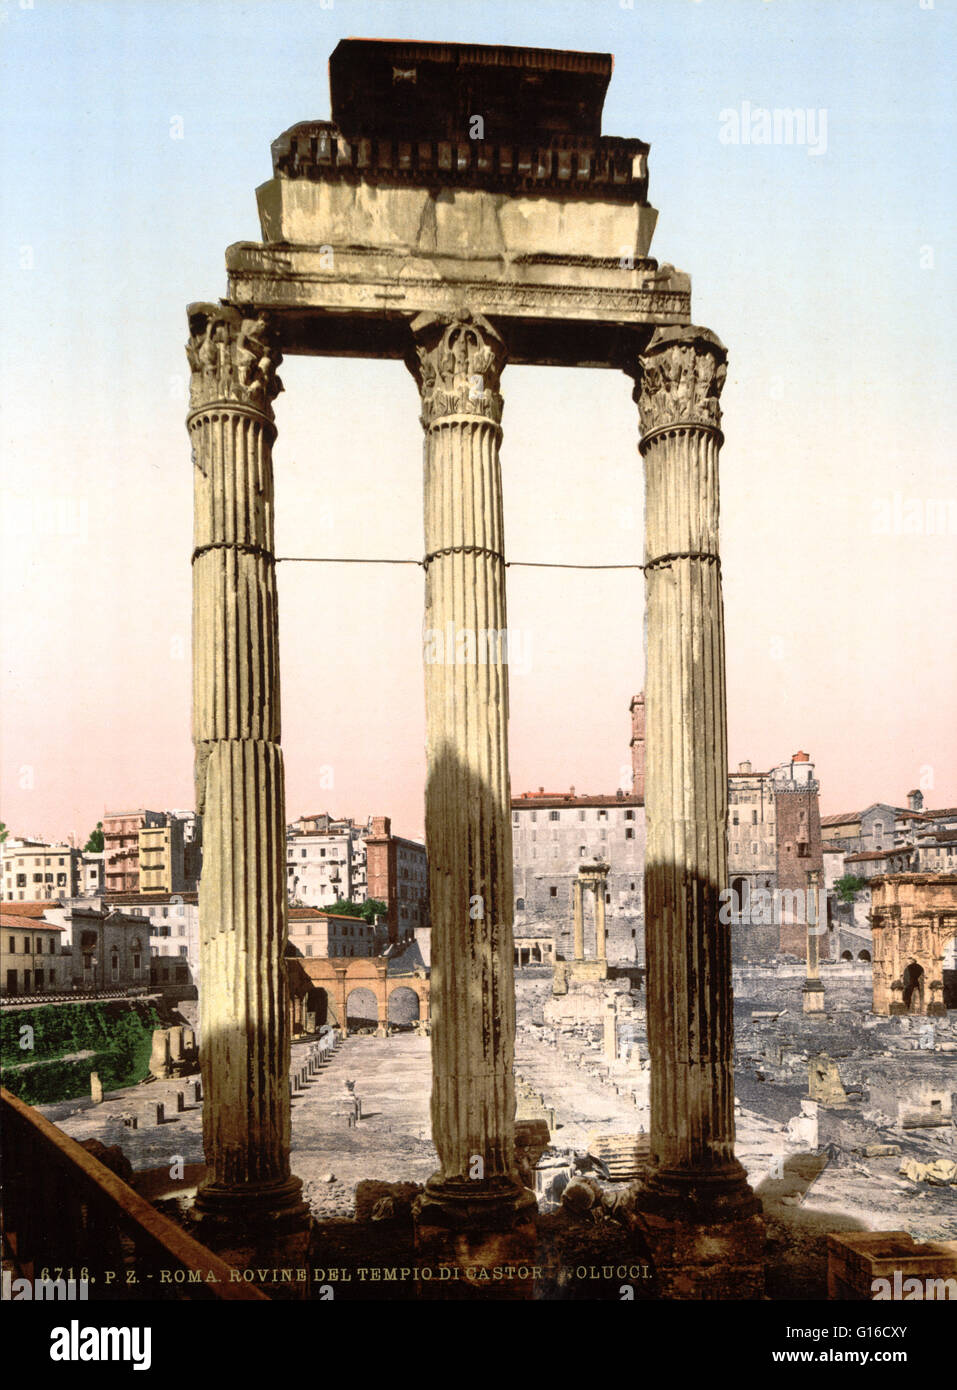 Il Tempio di Castore e Polluce è un edificio antico nel Foro Romano, Roma, Italia centrale. In origine fu costruita in ringraziamento per la vittoria nella battaglia di Lago Regillus (495 BC). Castore e Polluce erano i Dioscuri, i gemelli di Gemini, i letti in modo Foto Stock